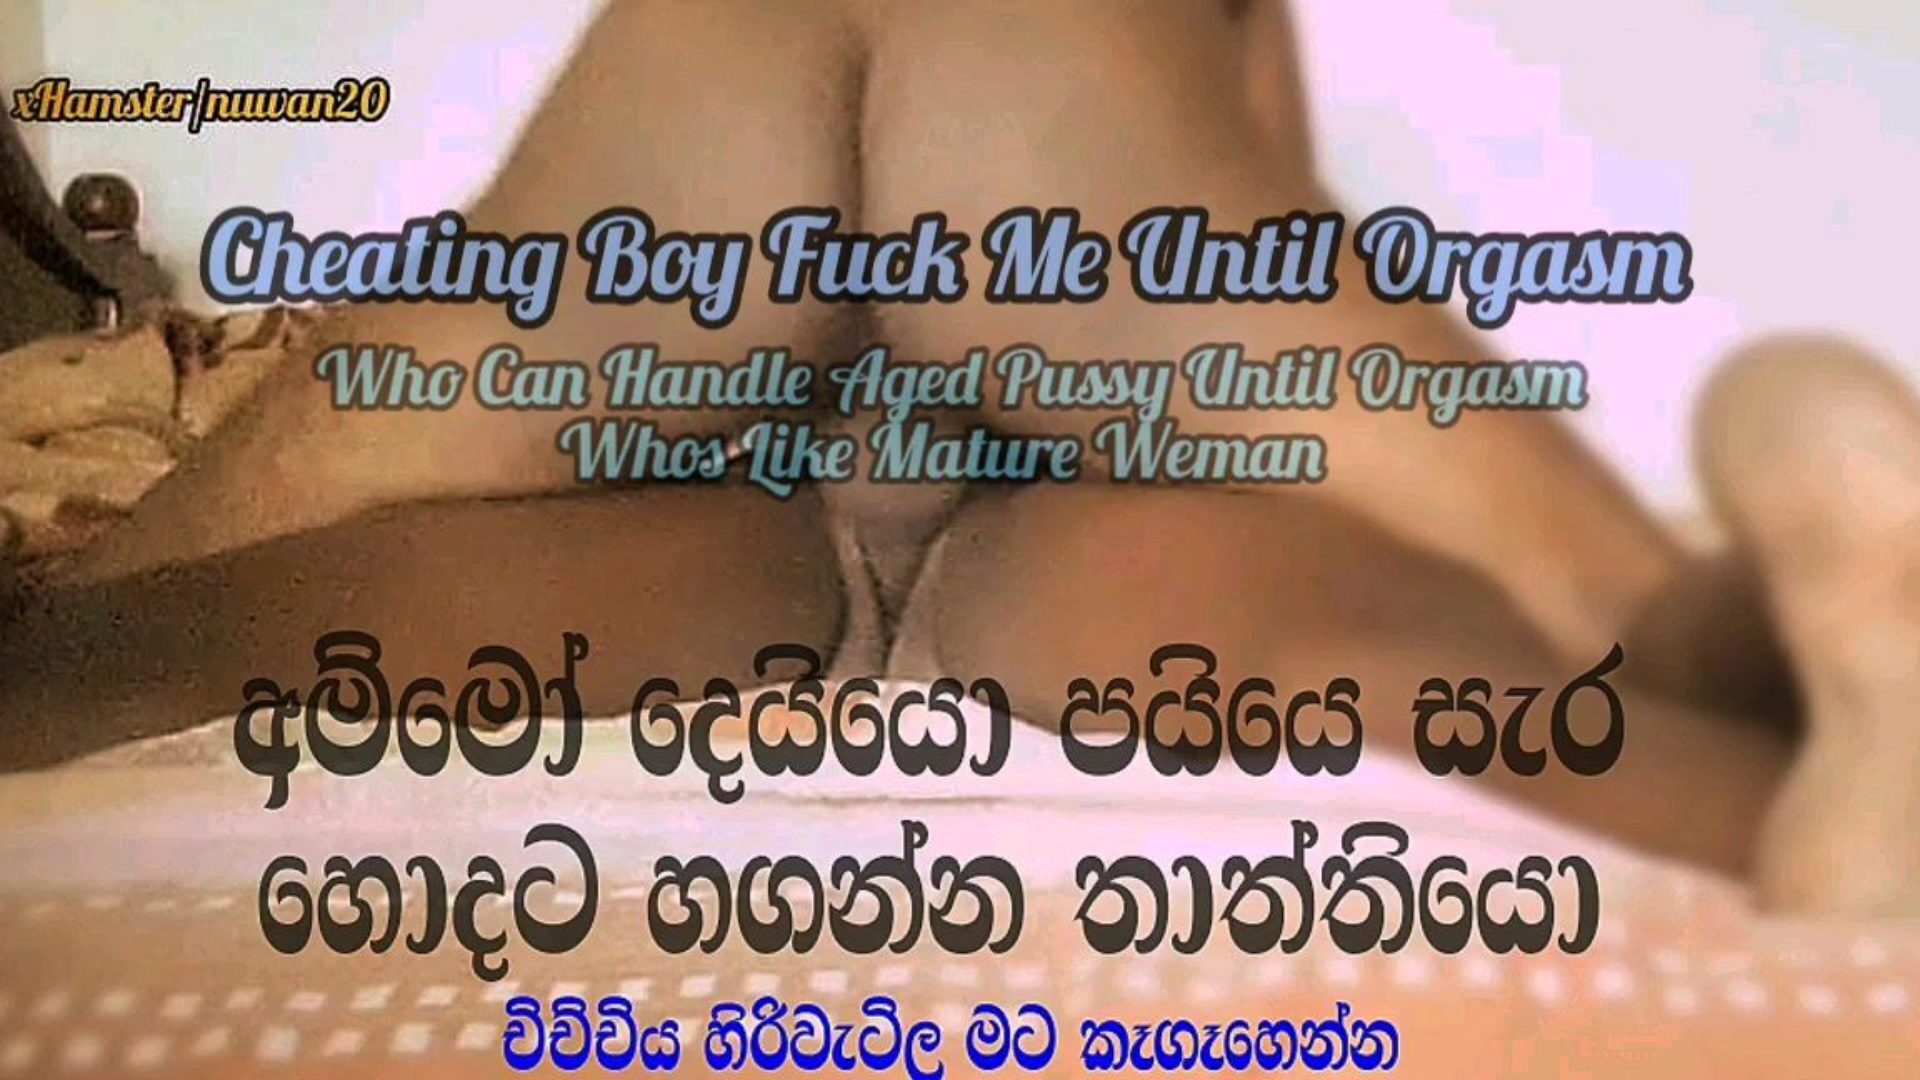 amunicja eke sepa - orgazmiczne ruchanie - sprośne rozmowy - Sri Lanki oglądaj amunicję eke sepa - orgazmiczne ruchanie - sprośne rozmowy - Sri Lankan wideo na xhamster - ostateczna baza danych darmowych azjatyckich brudnych rozmów kanał hd porno tube vids